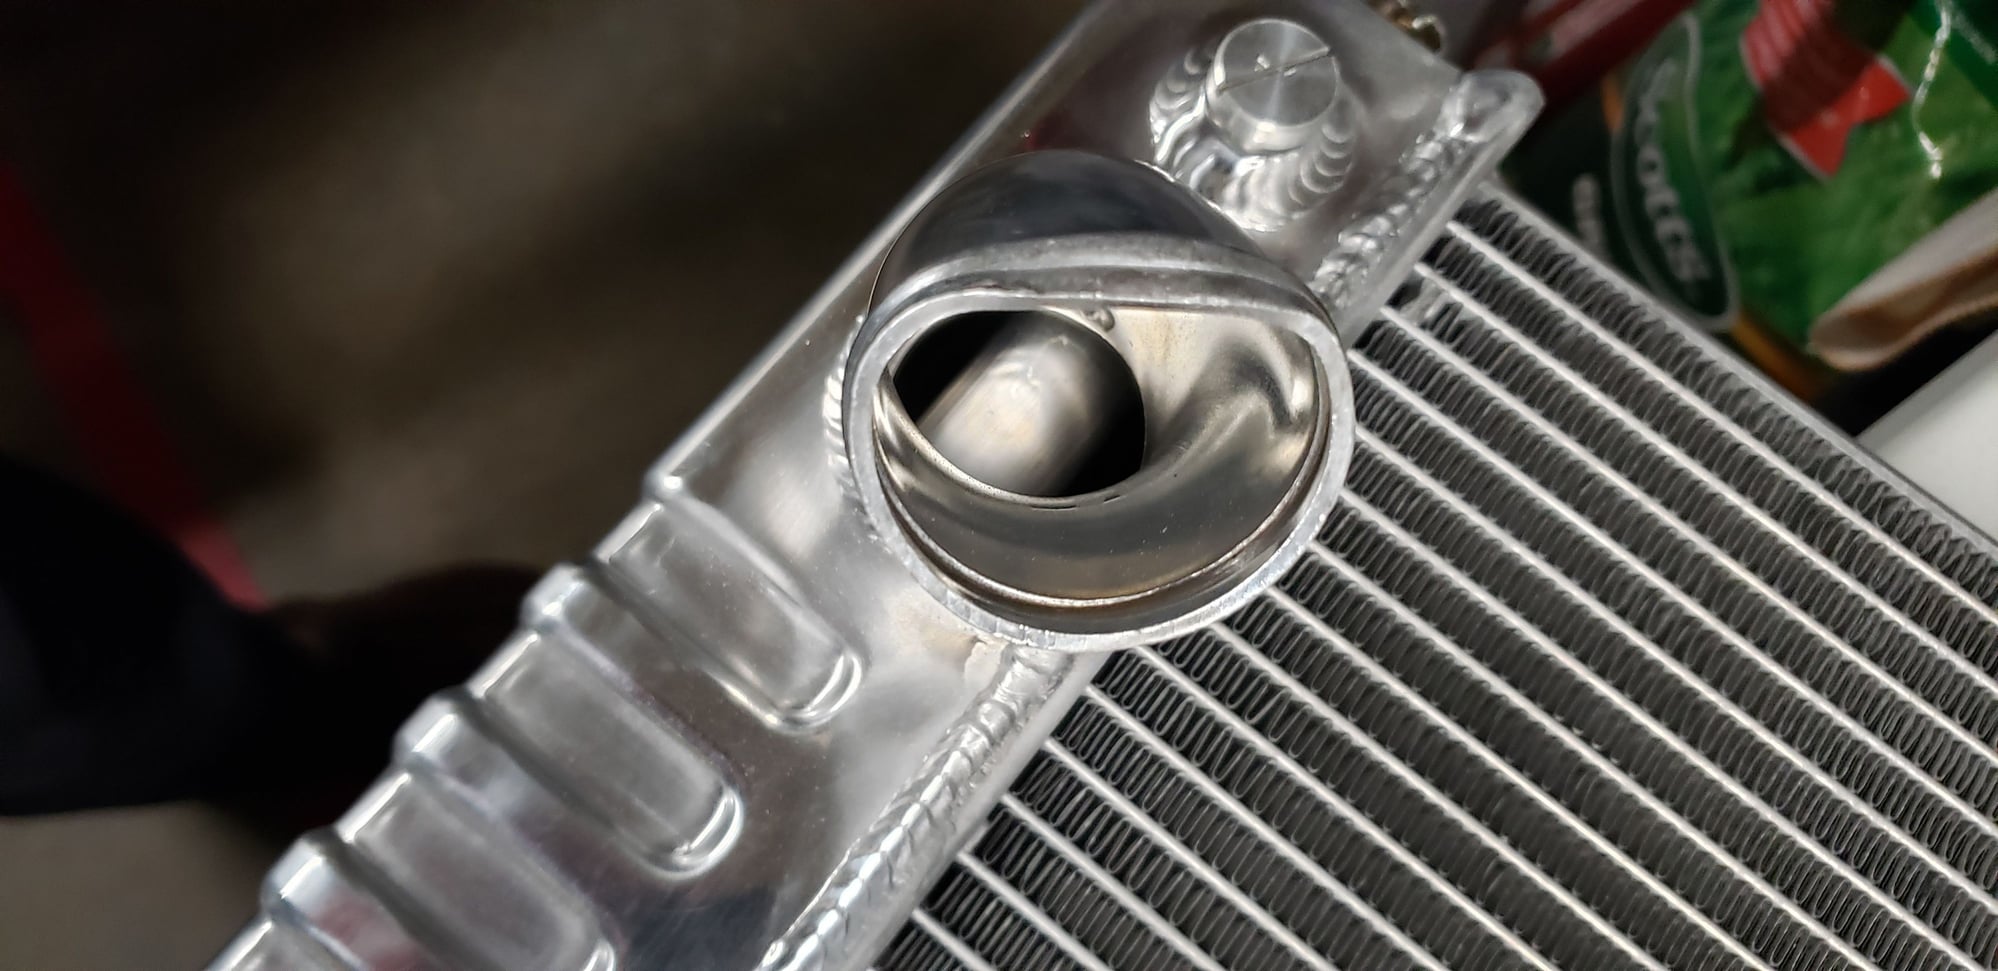 Bent radiator hose pipe - CorvetteForum - Chevrolet ...